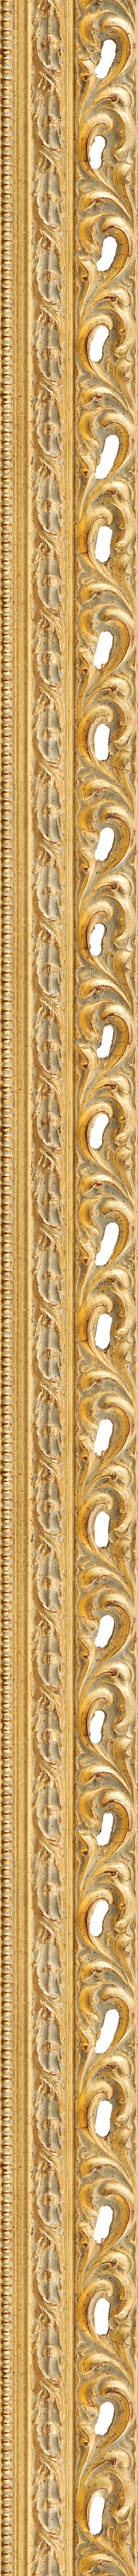 Wide antique gold leaf frame frame